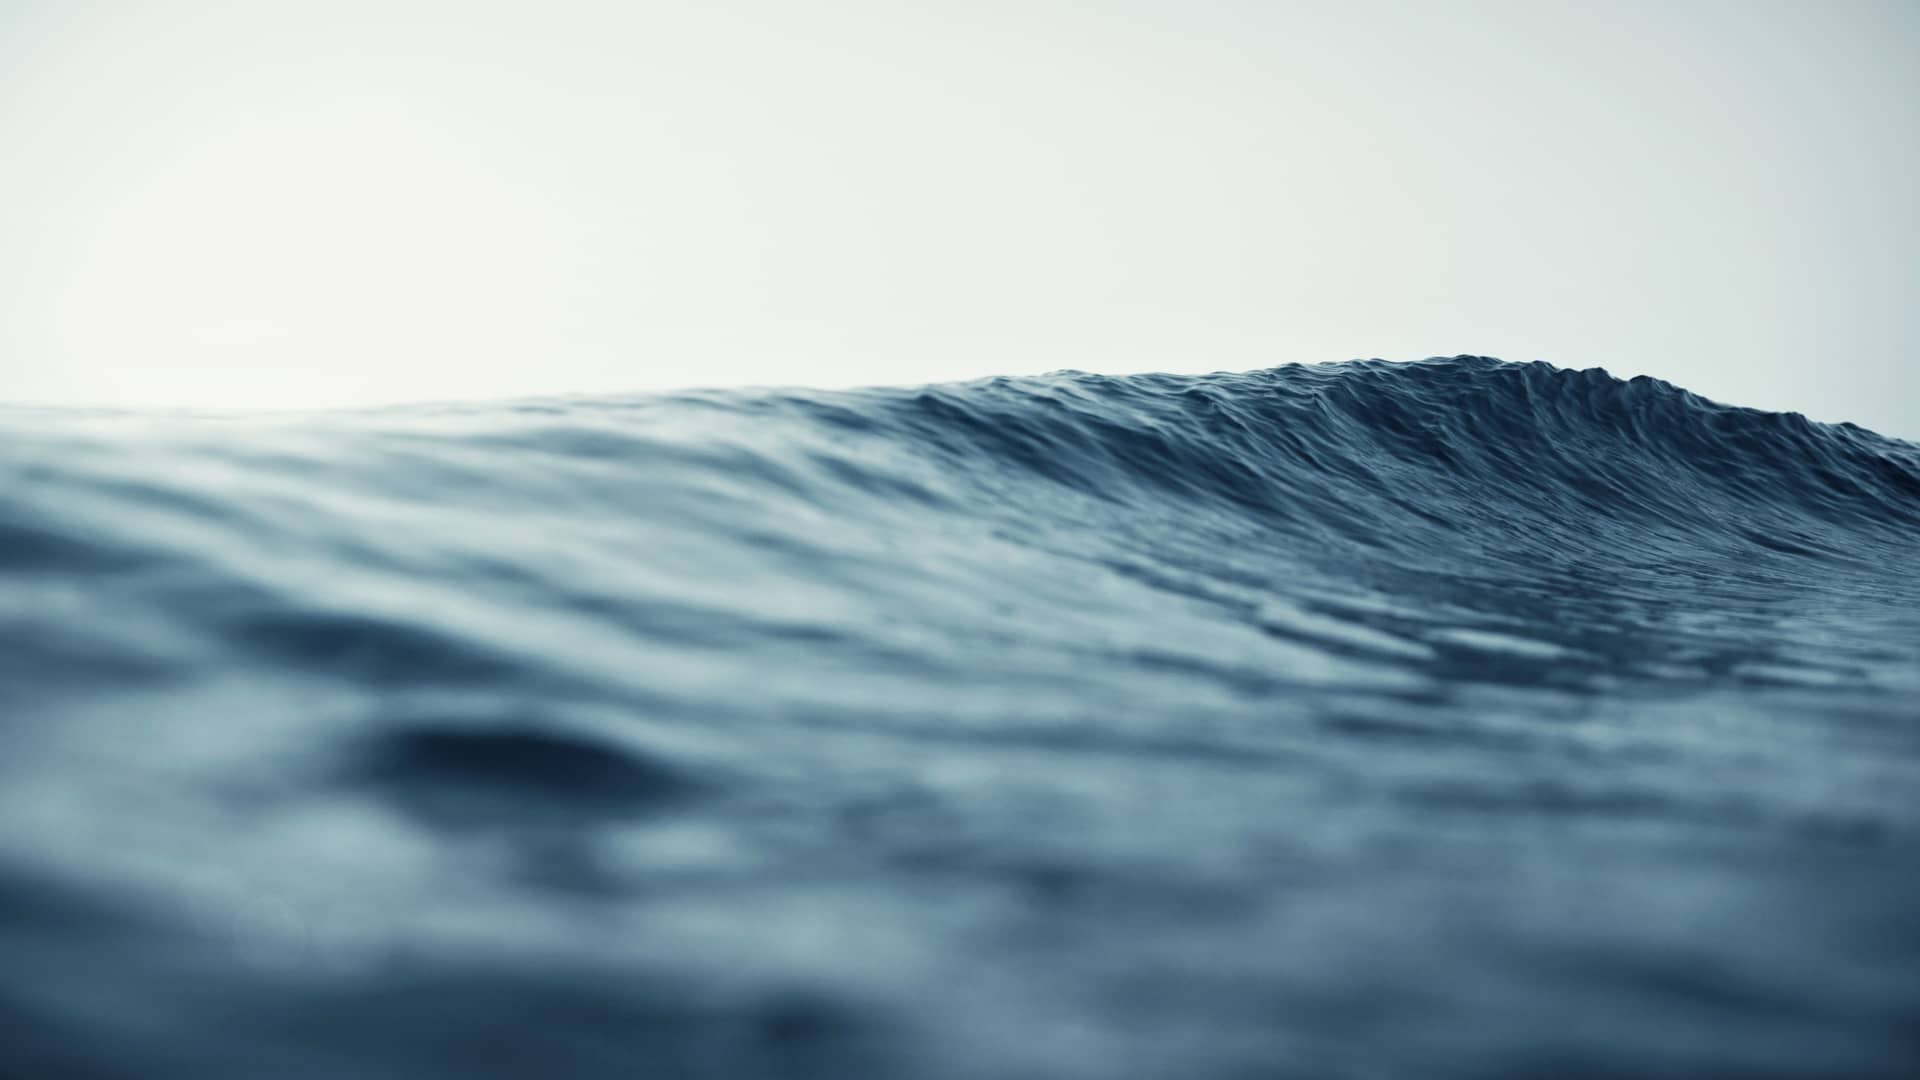 Ola del mar es uno de los tipos de elementos utlizados para generar energía maremotriz